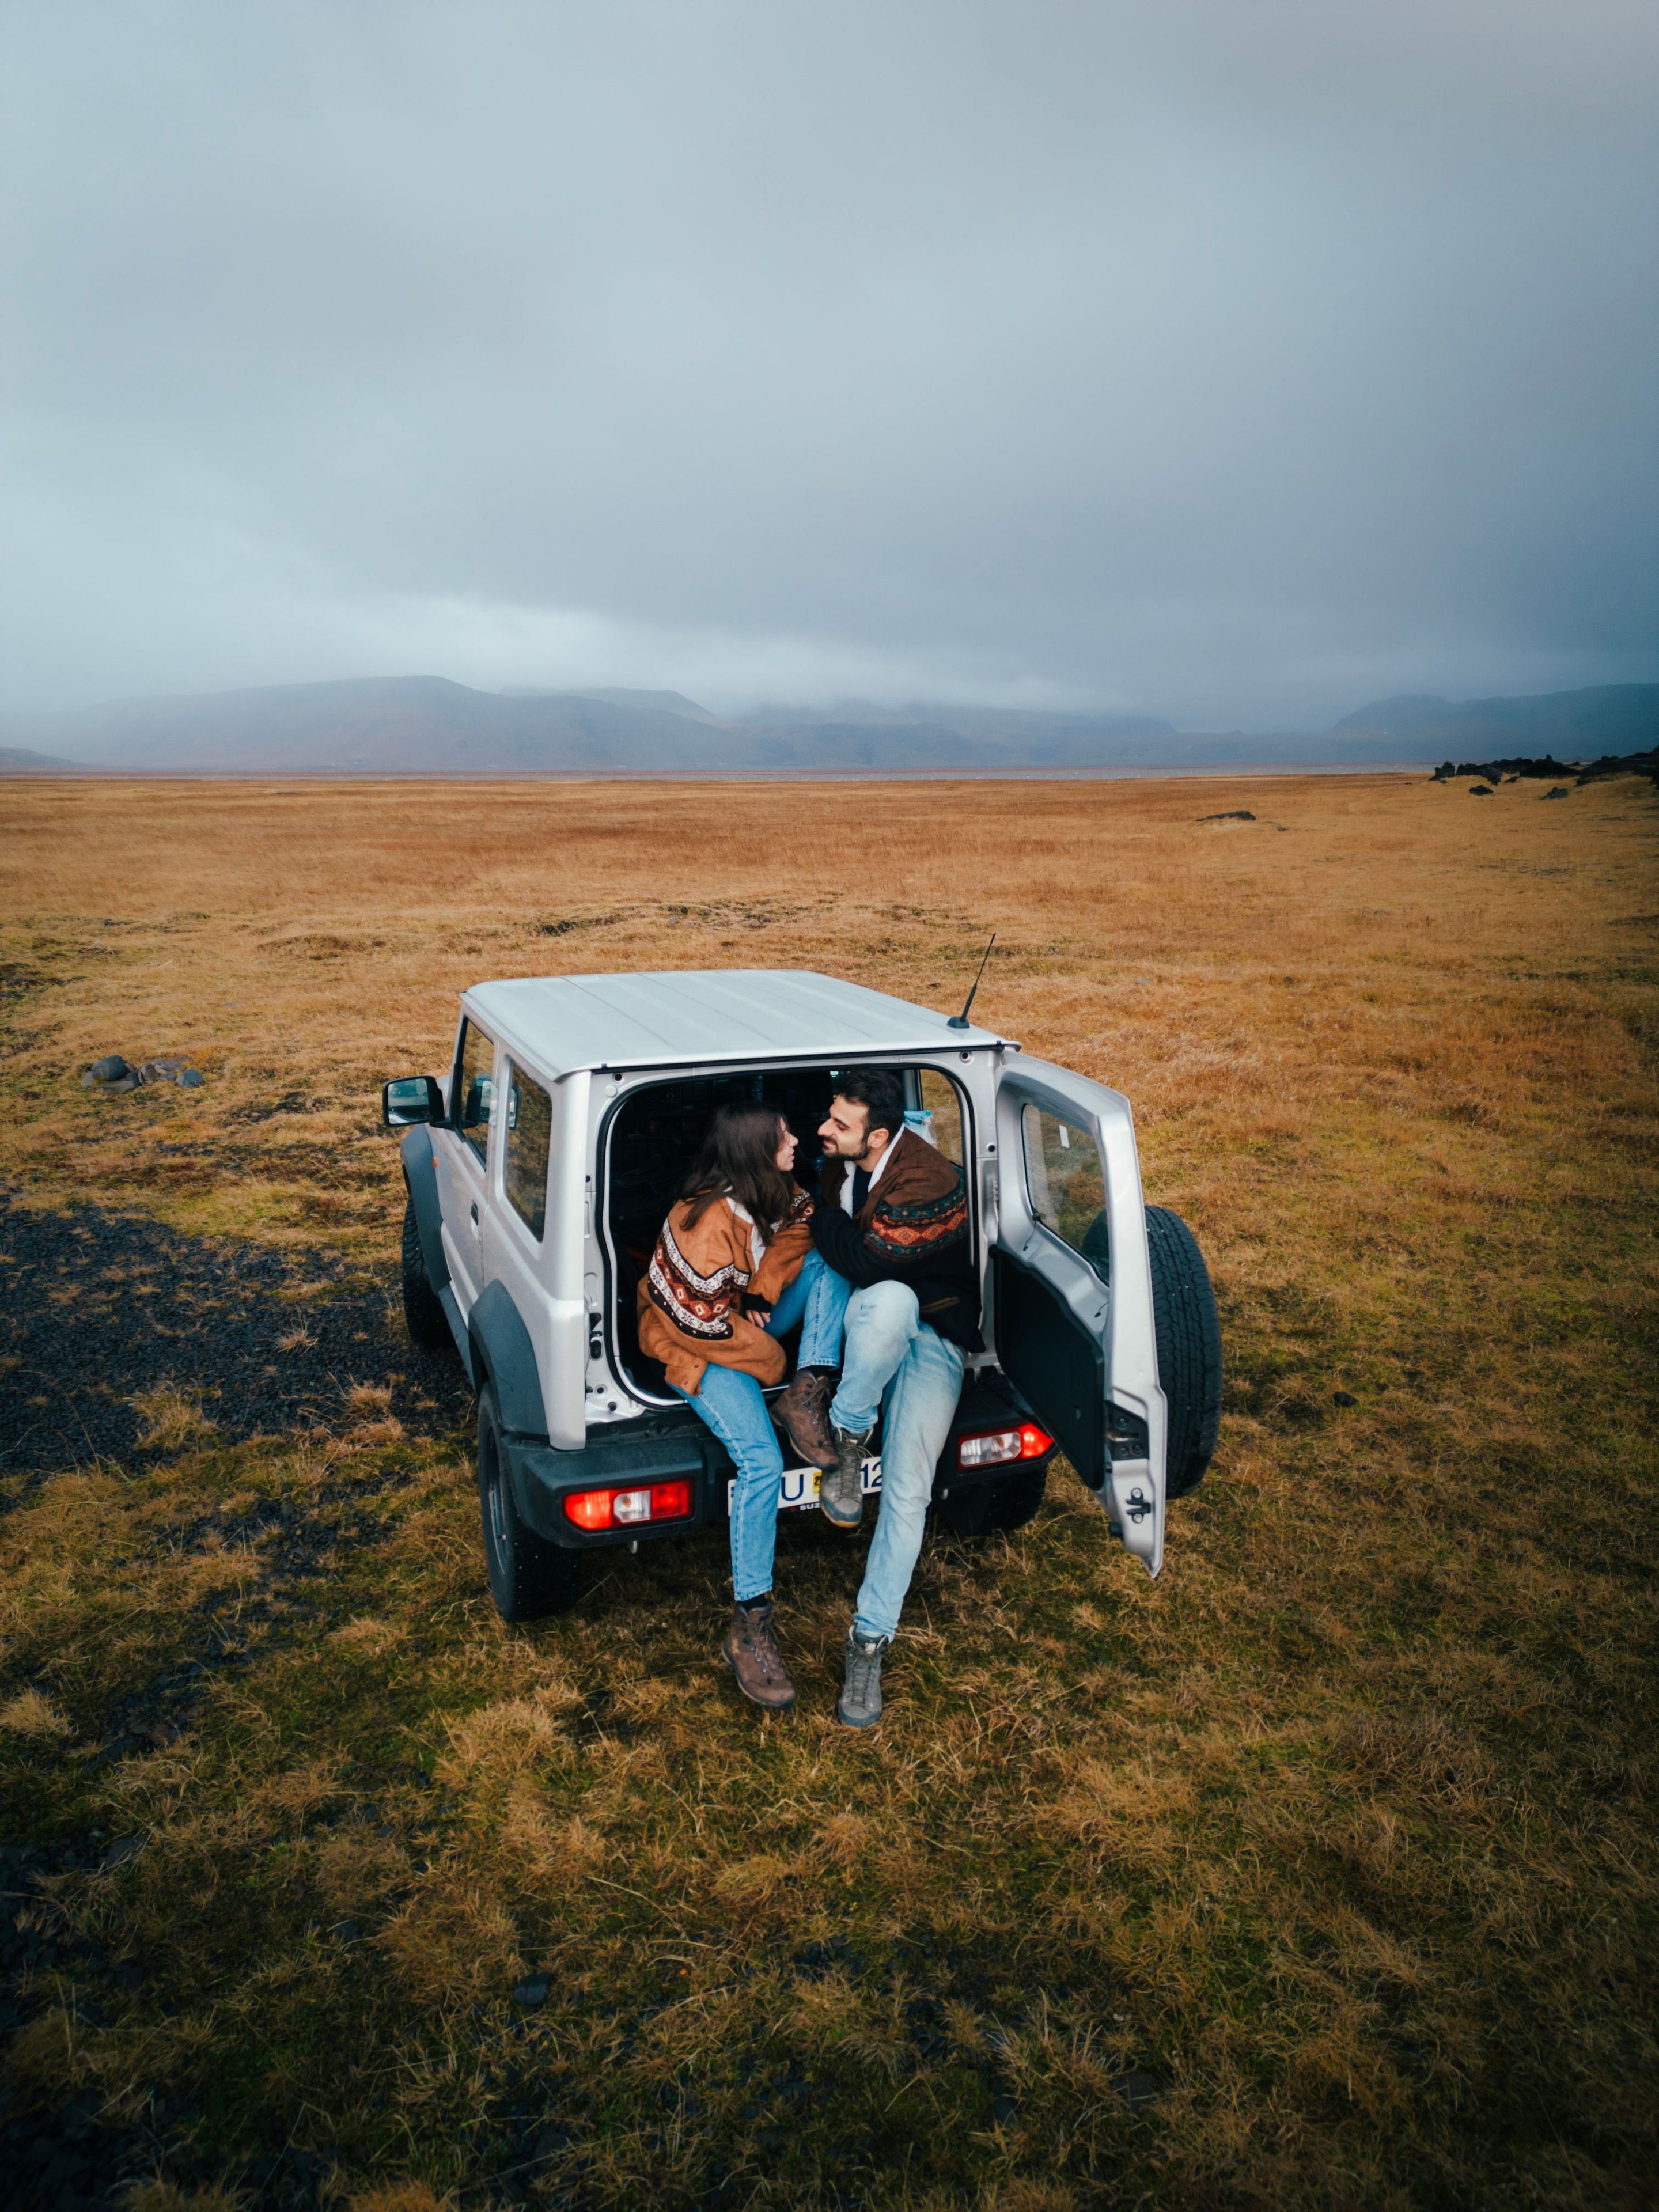 Go Car Rental Islande offre des locations de voitures abordables. Louez une voiture et découvrez l'Islande